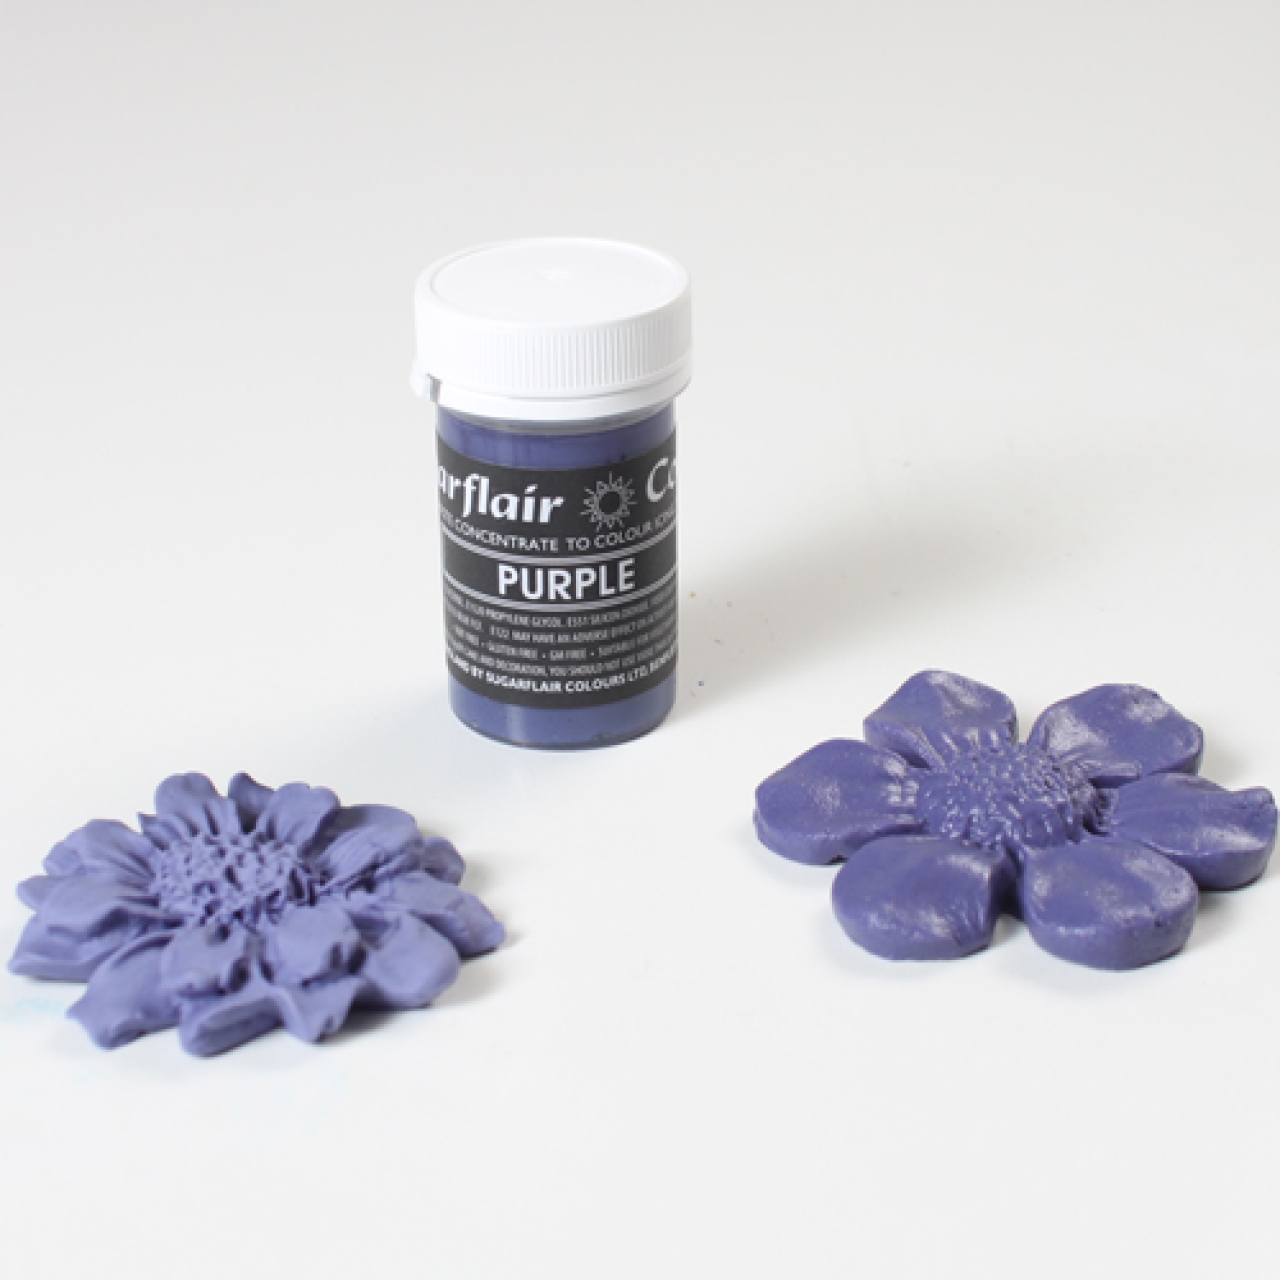 Sugarflair Profi Lebensmittelfarbe Pastel Lila, 'Purple' 25 g